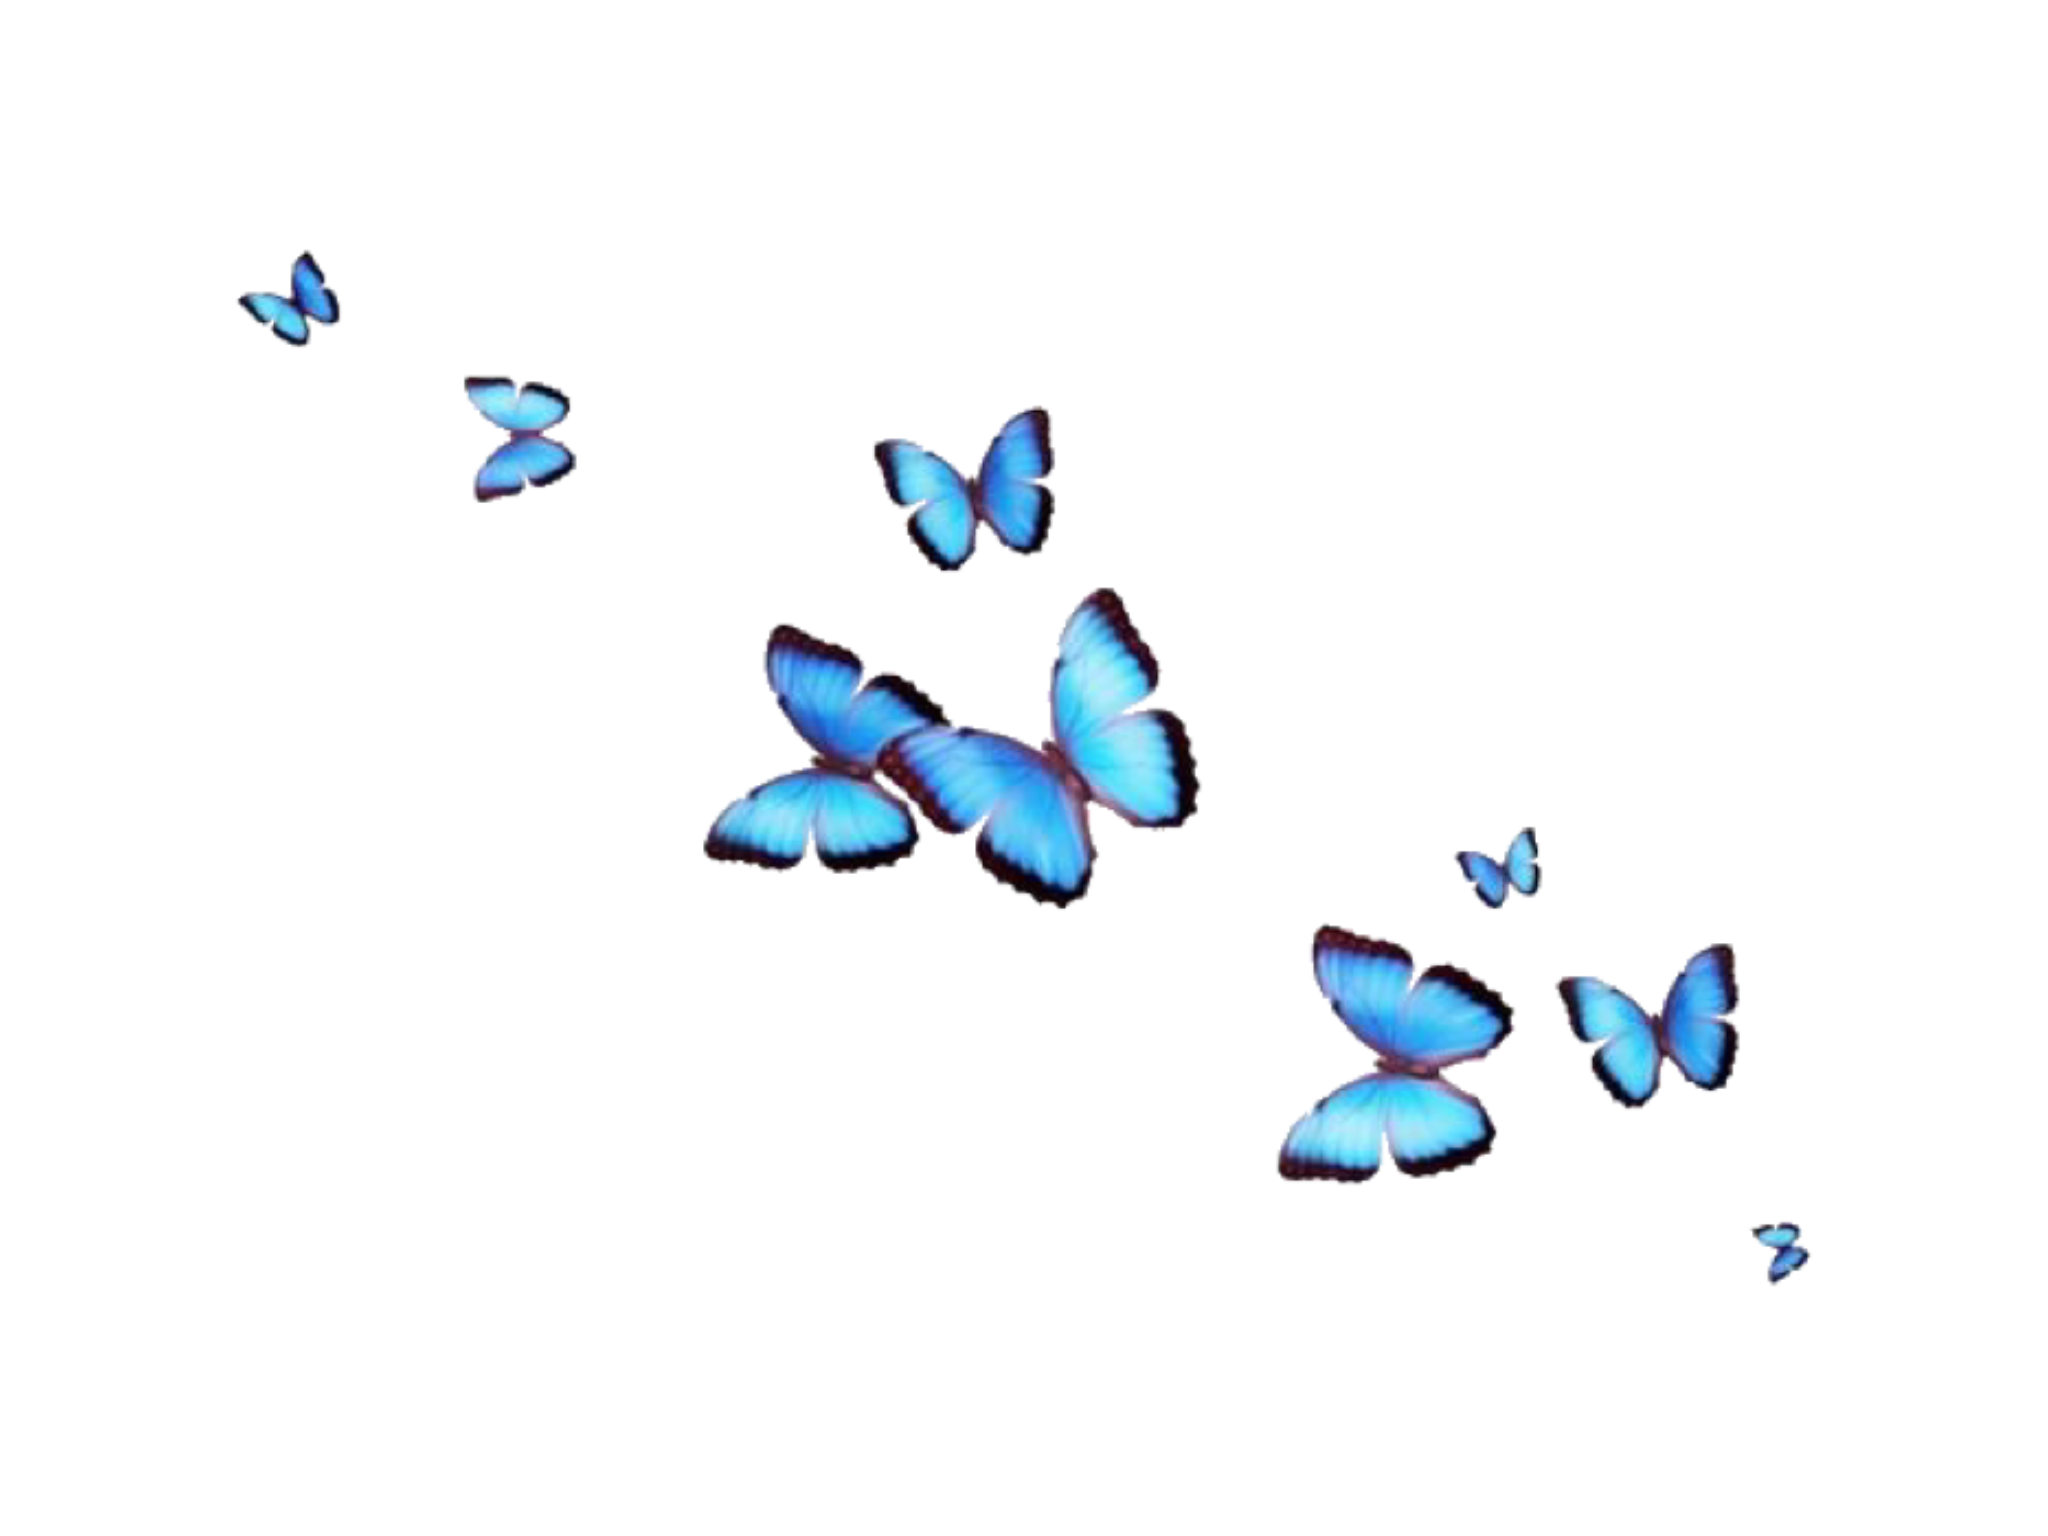 Hình ảnh bướm thẩm mỹ PNG nền trong suốt là một trong những bức ảnh thú vị nhất mà bạn có thể tìm thấy. Với những chi tiết tinh tế và sắc đẹp tuyệt vời, hình ảnh này chắc chắn sẽ khiến bạn say mê và muốn xem nó lần nữa.